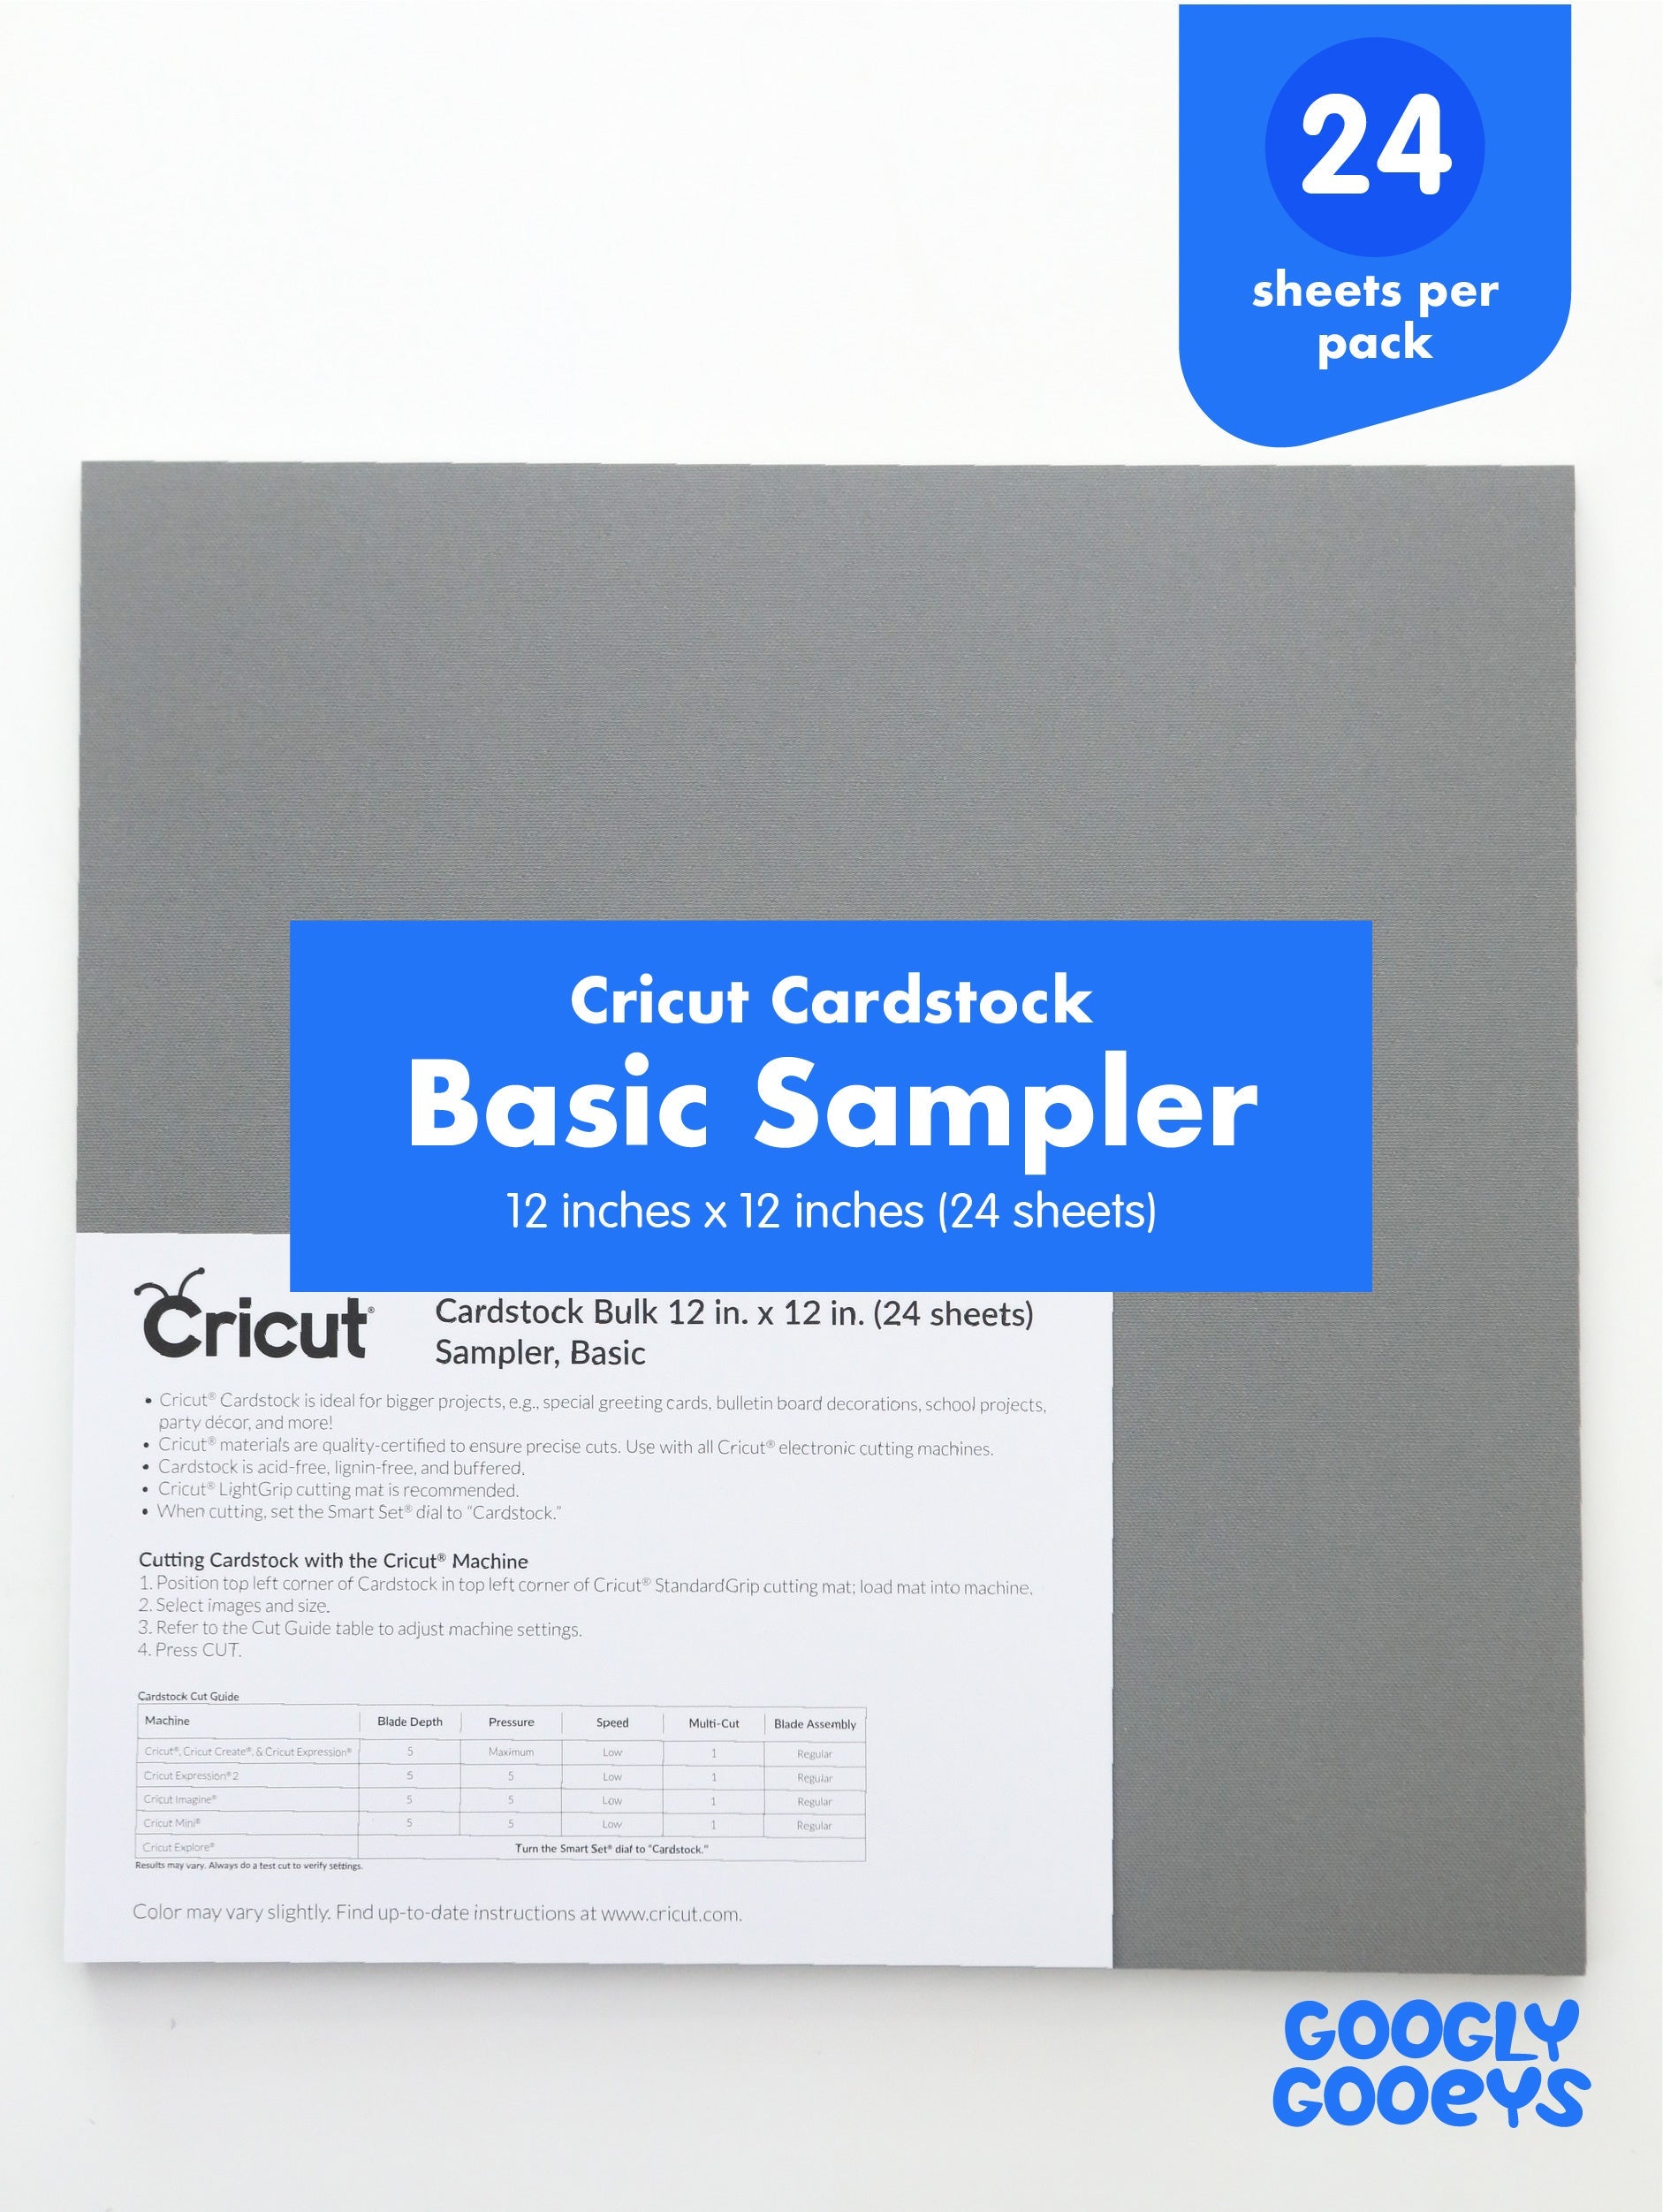 Cricut Cardstock Basic Sampler 12x12